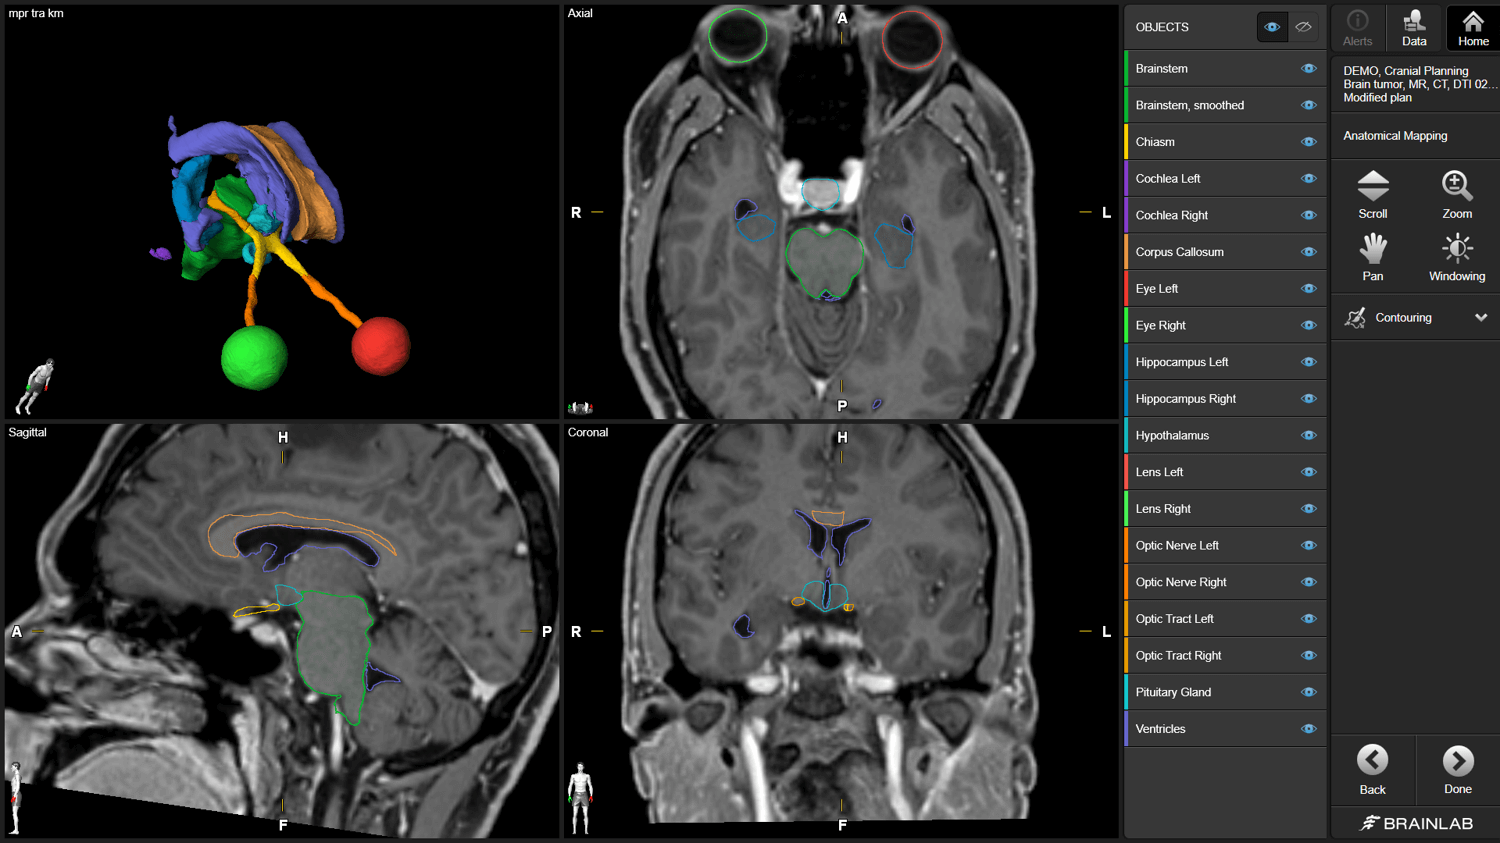 Captura de tela do software Anatomical Mapping usado para segmentar diferentes estruturas cerebrais para o planejamento de tratamentos radioterápicos.